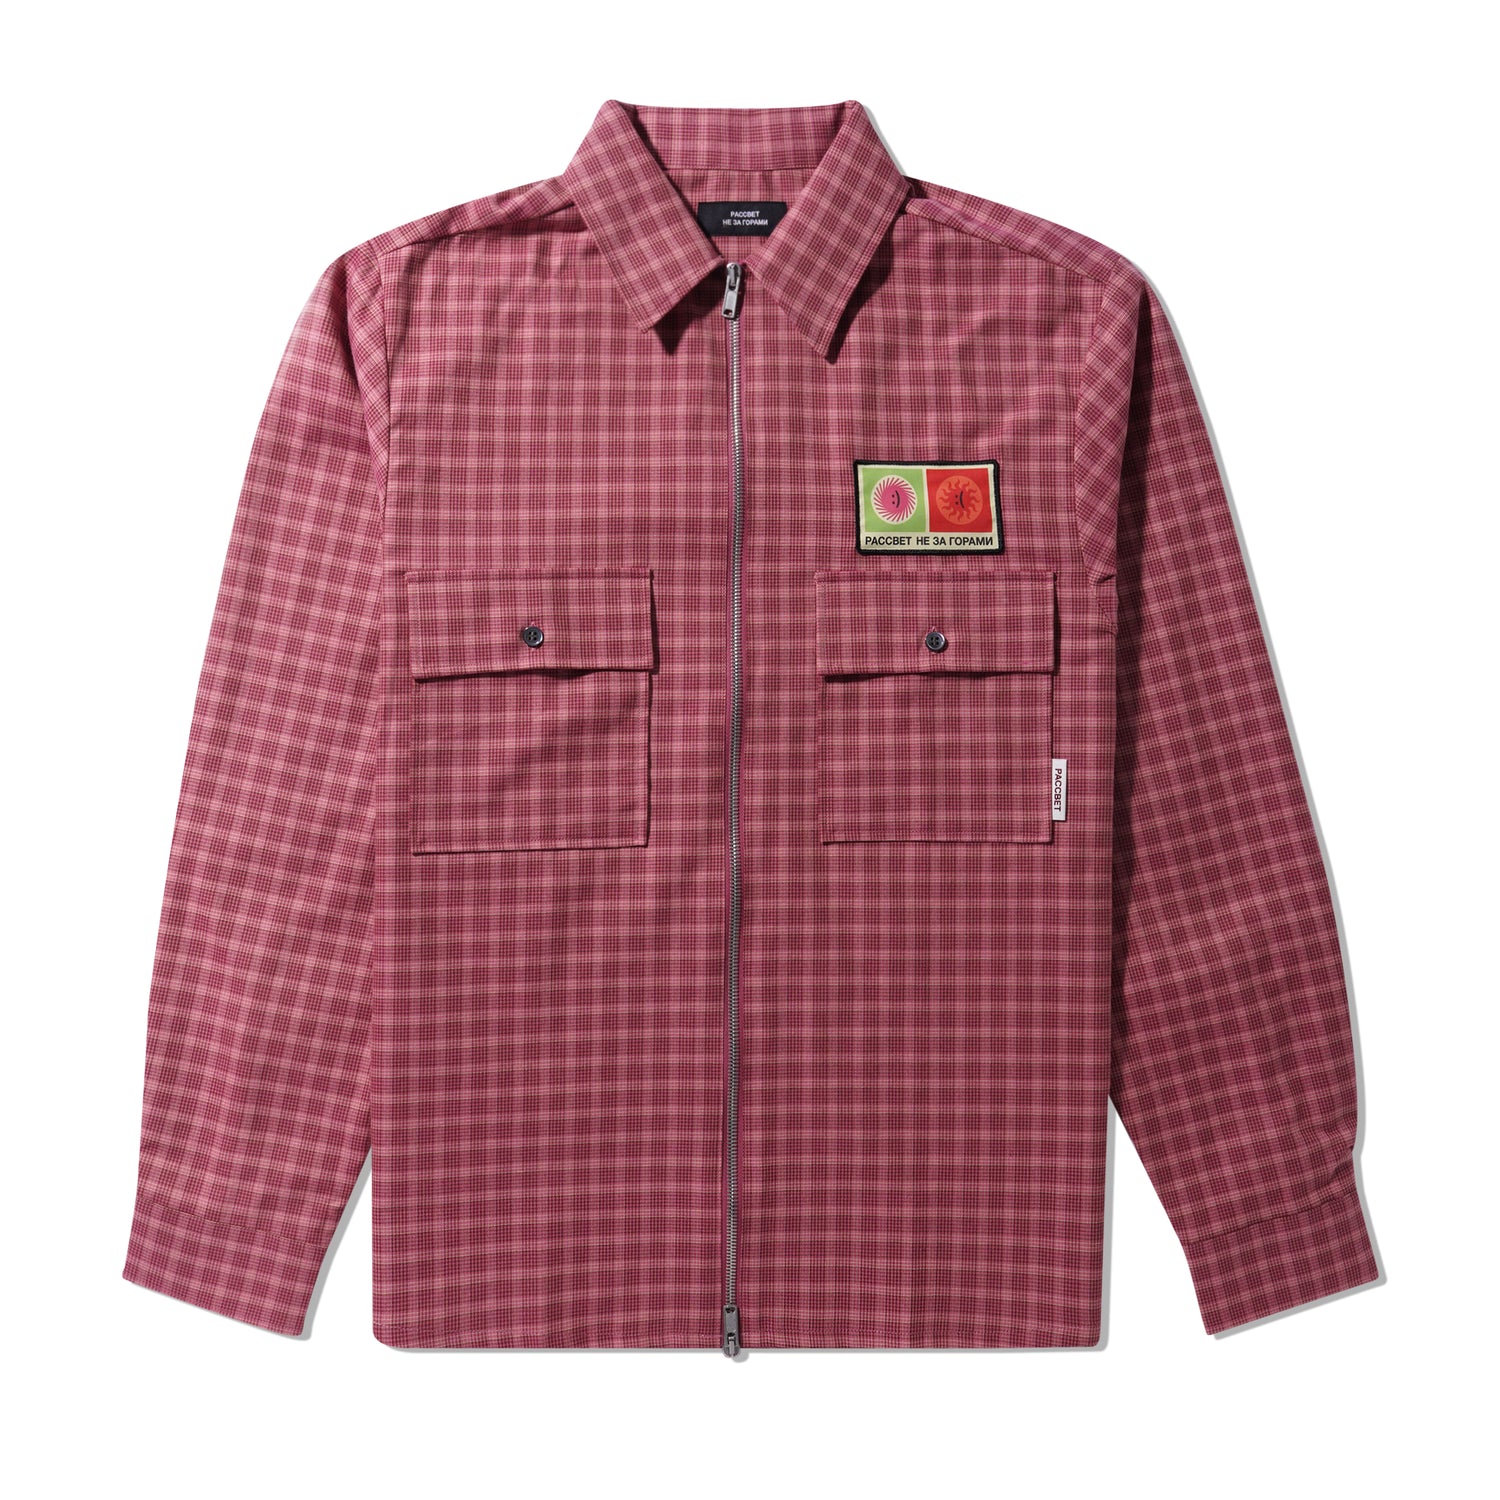 Woven Zip Patch Shirt, Light Pink